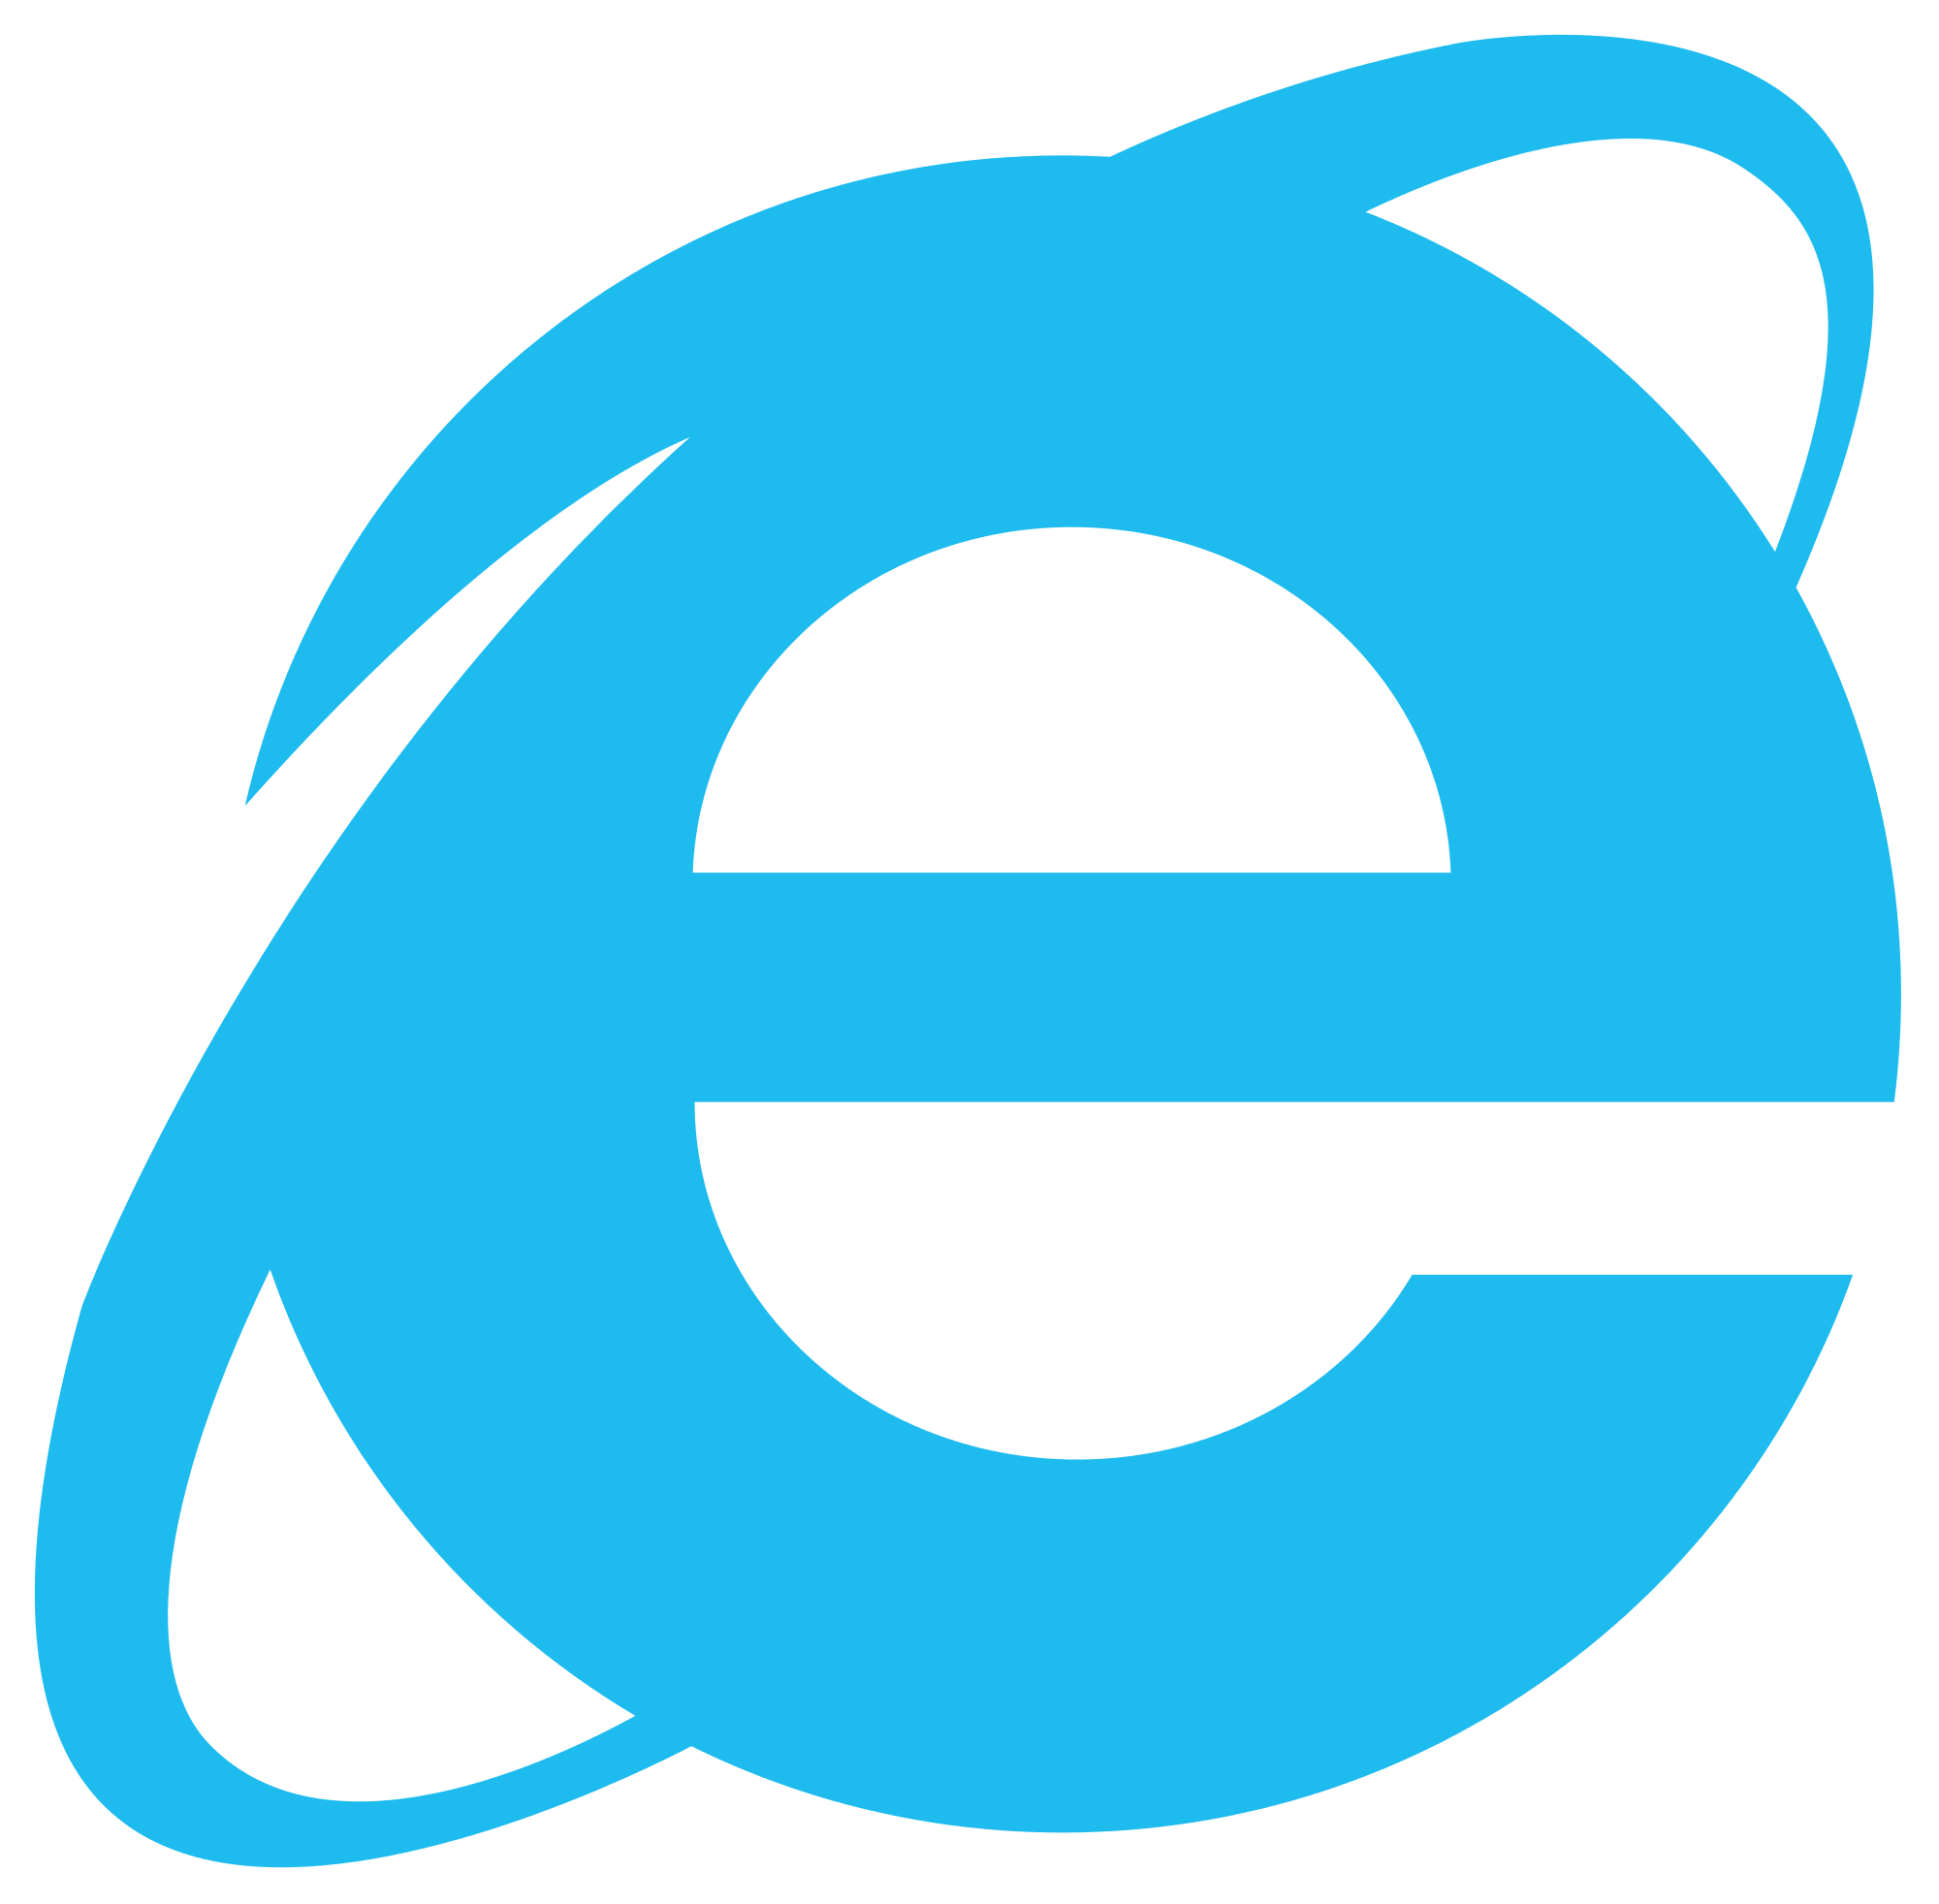 download internet explorer 11 for windows 7 ultimate 32 bit